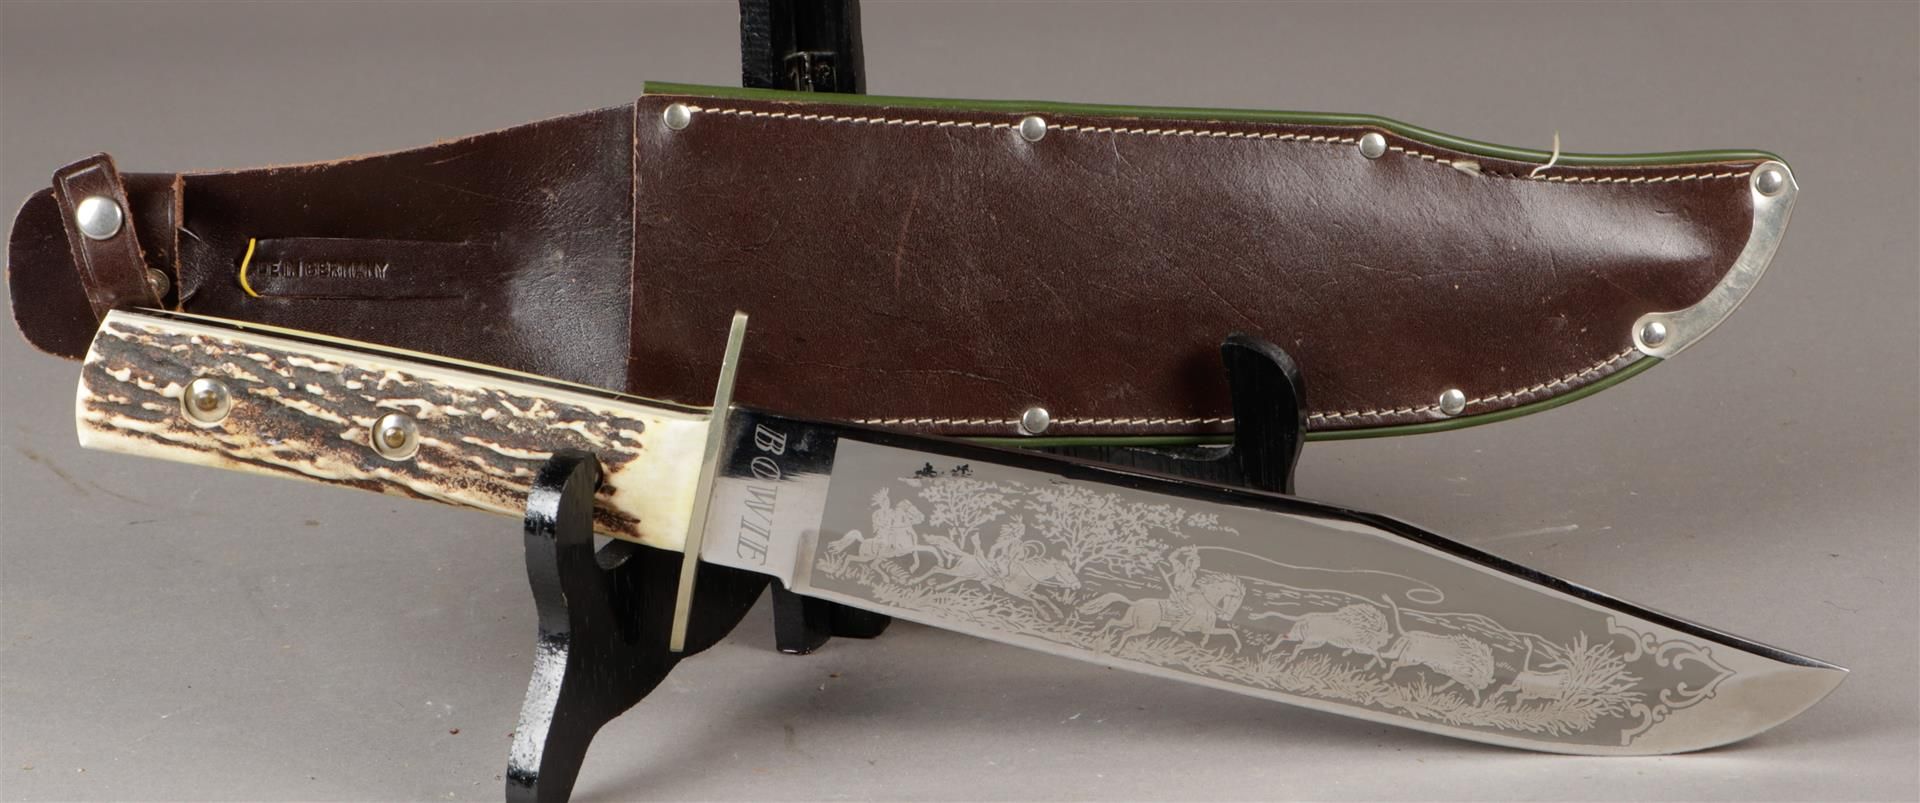 Een Bowie mes (Linder Messer) Solingen, met gegraveerd buff